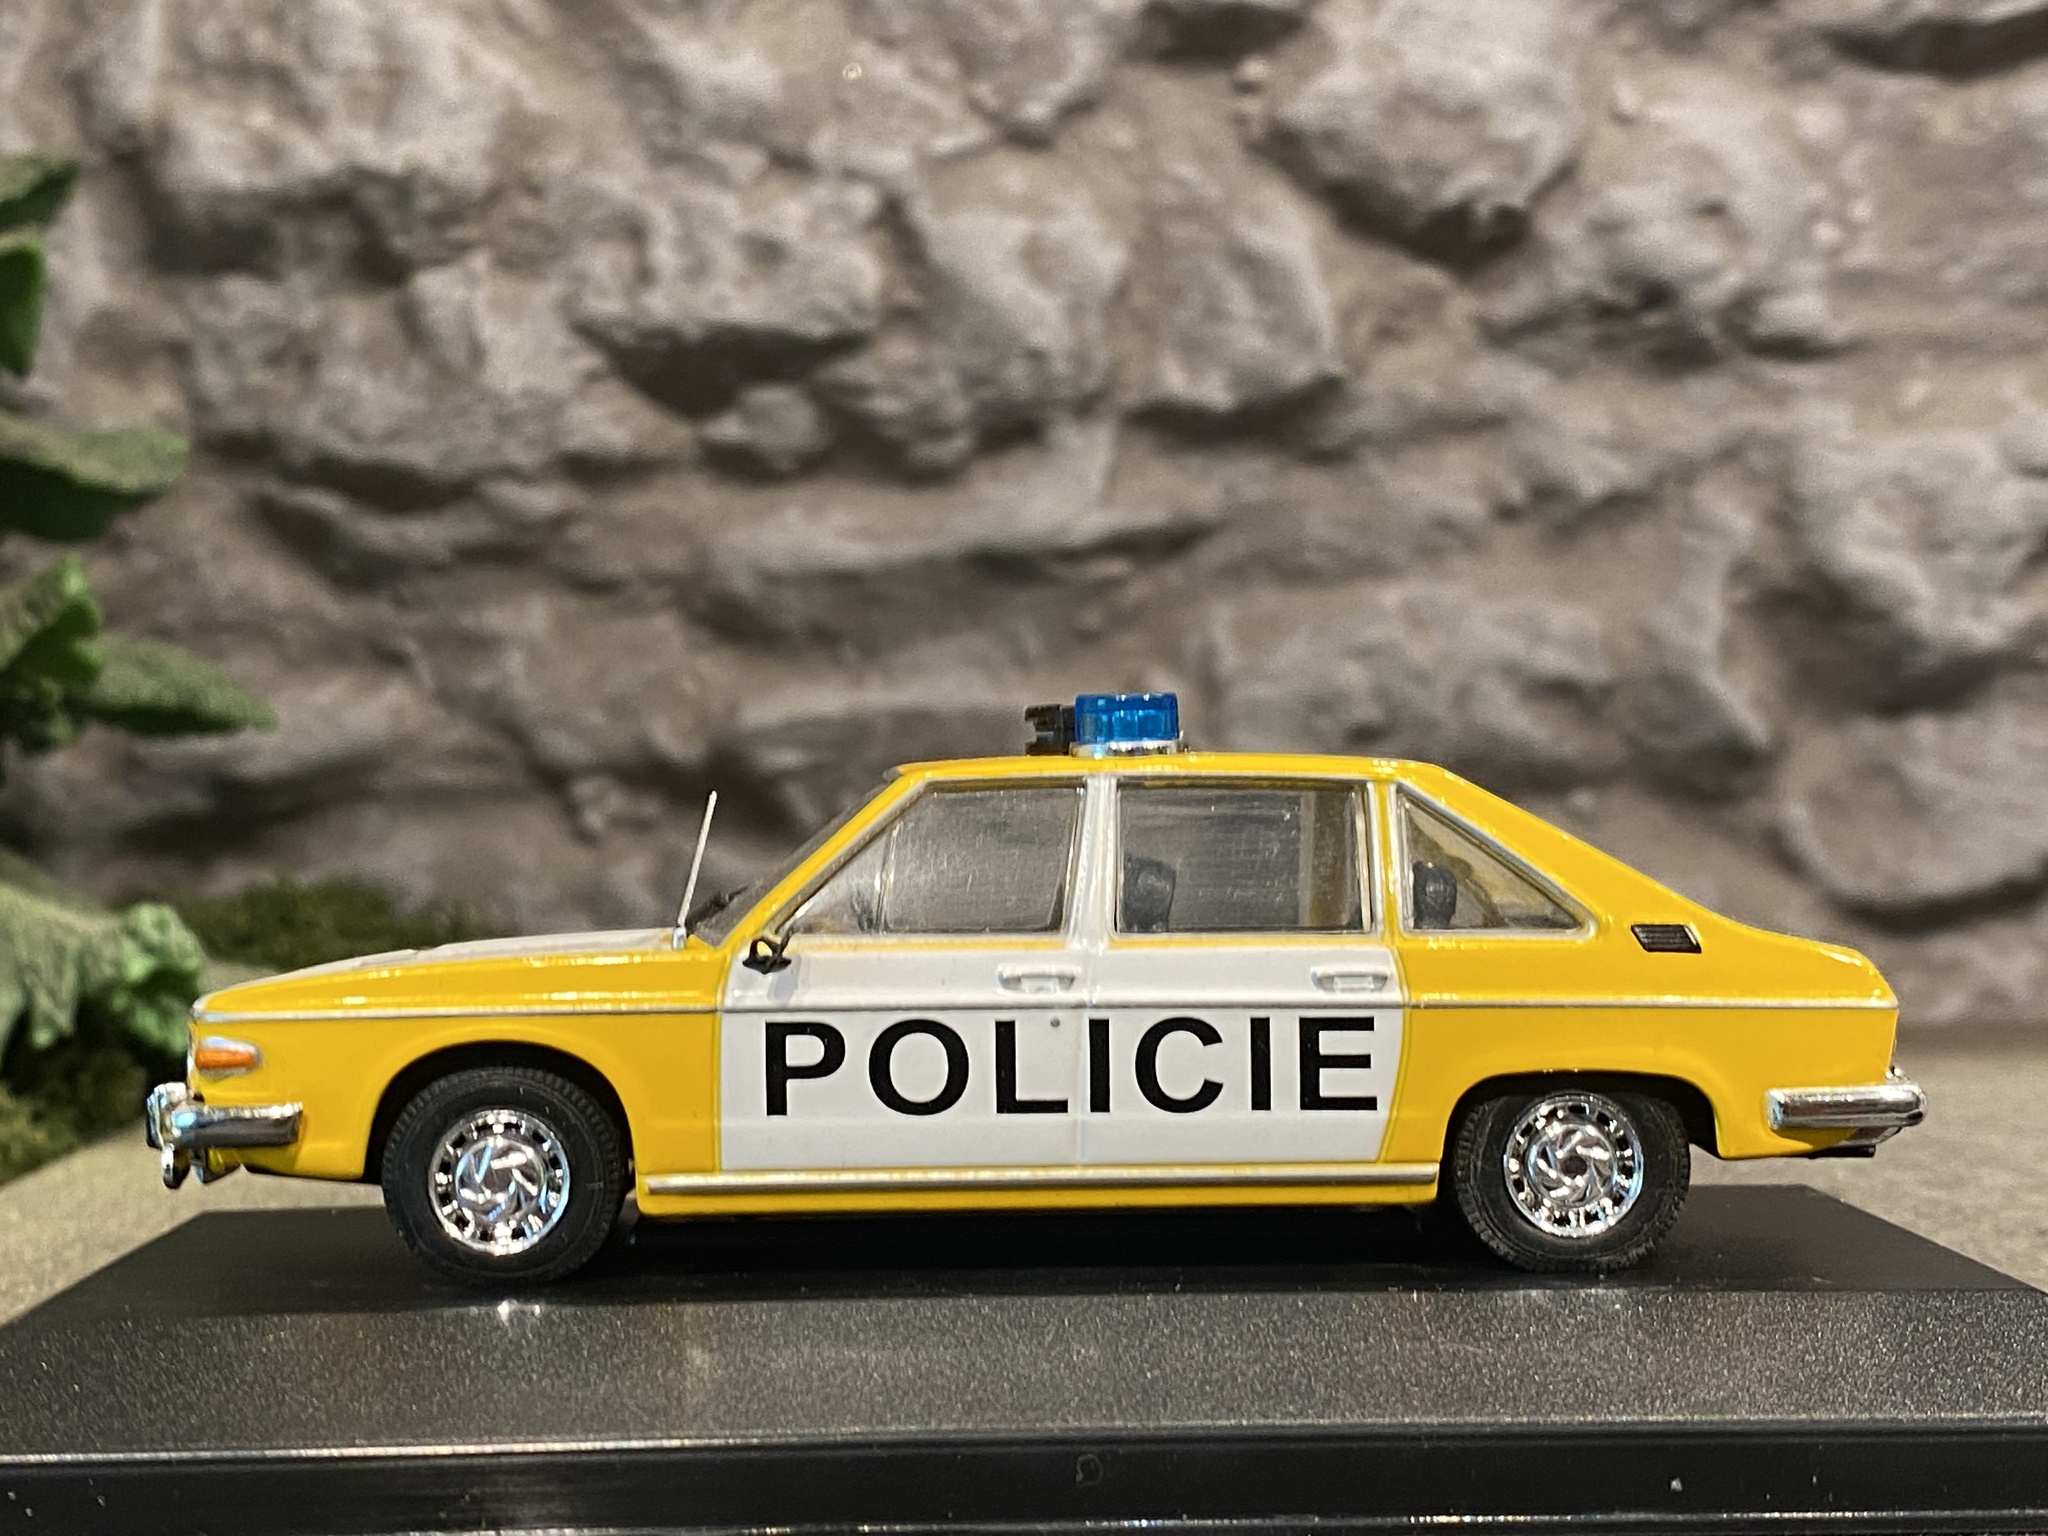 Skala 1/43 Snygg modellbil av Tatra 613 Politie Polisbil fr Atlas Editions